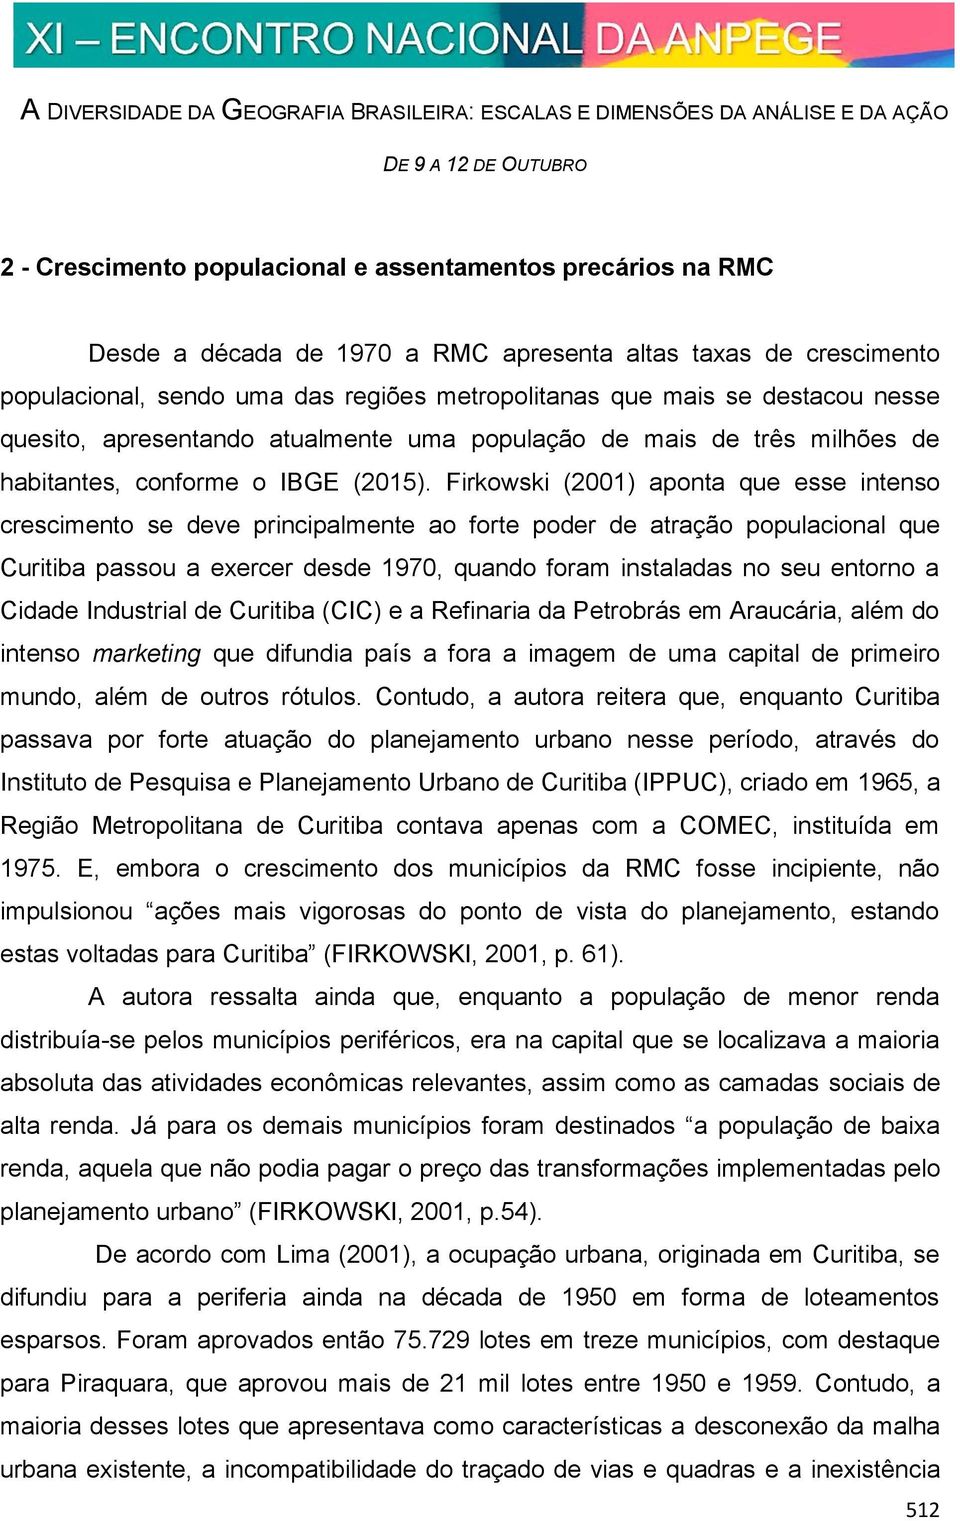 Firkowski (2001) aponta que esse intenso crescimento se deve principalmente ao forte poder de atração populacional que Curitiba passou a exercer desde 1970, quando foram instaladas no seu entorno a